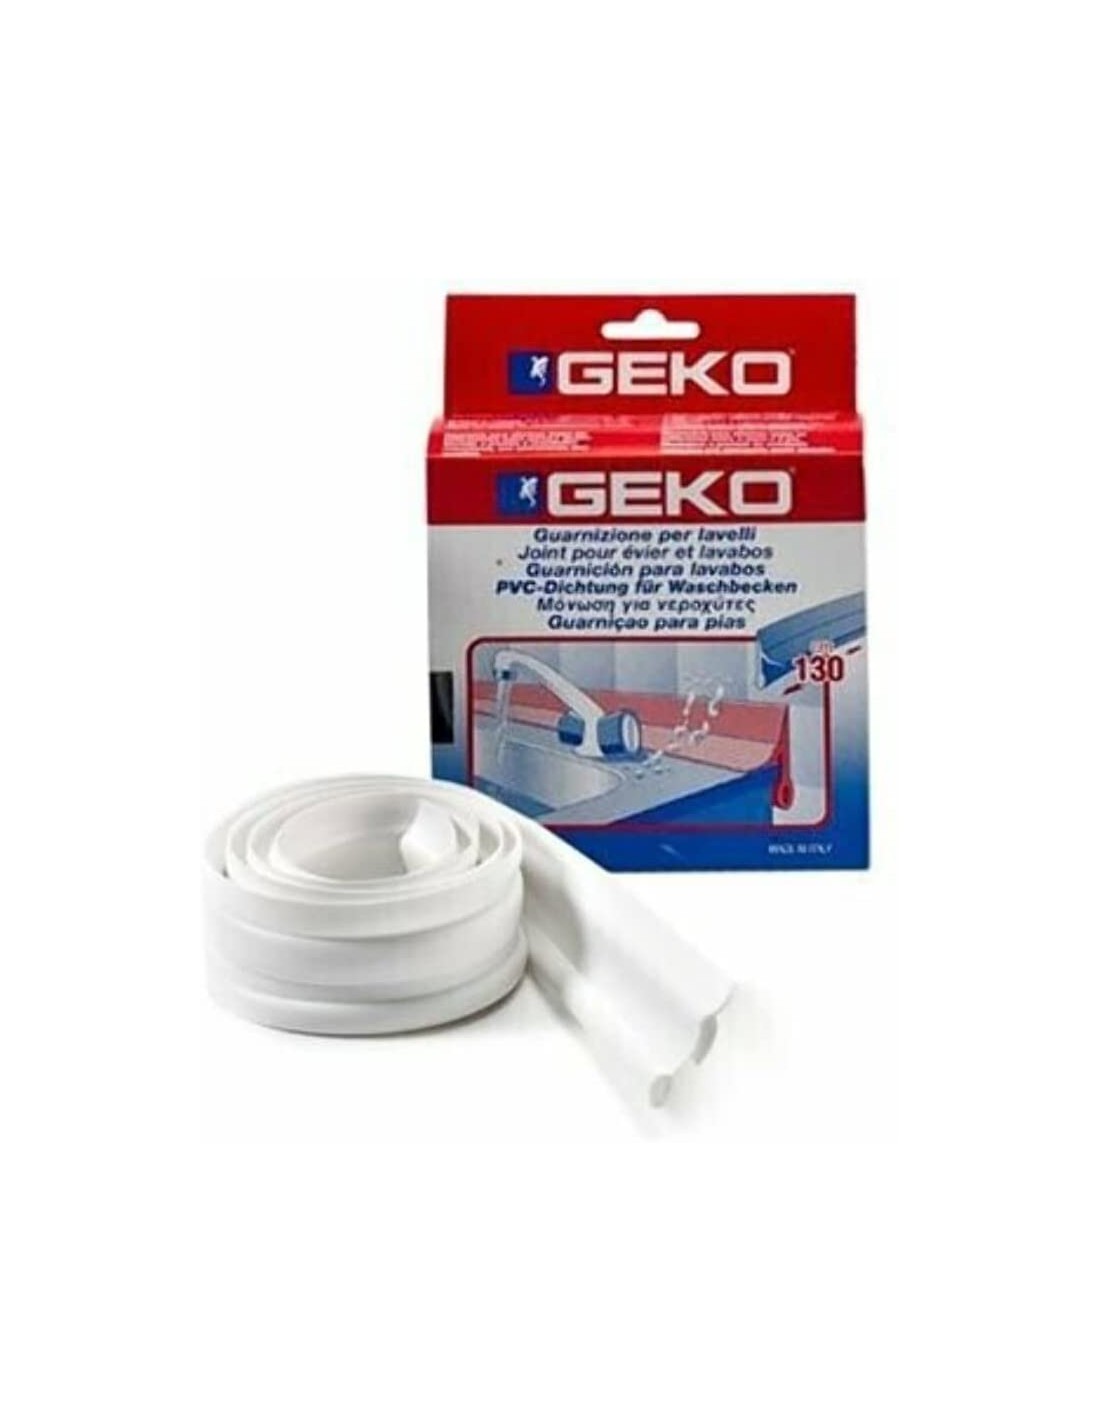 Geko Guarnizione Per Lavello Cucina - Bianco 130cm